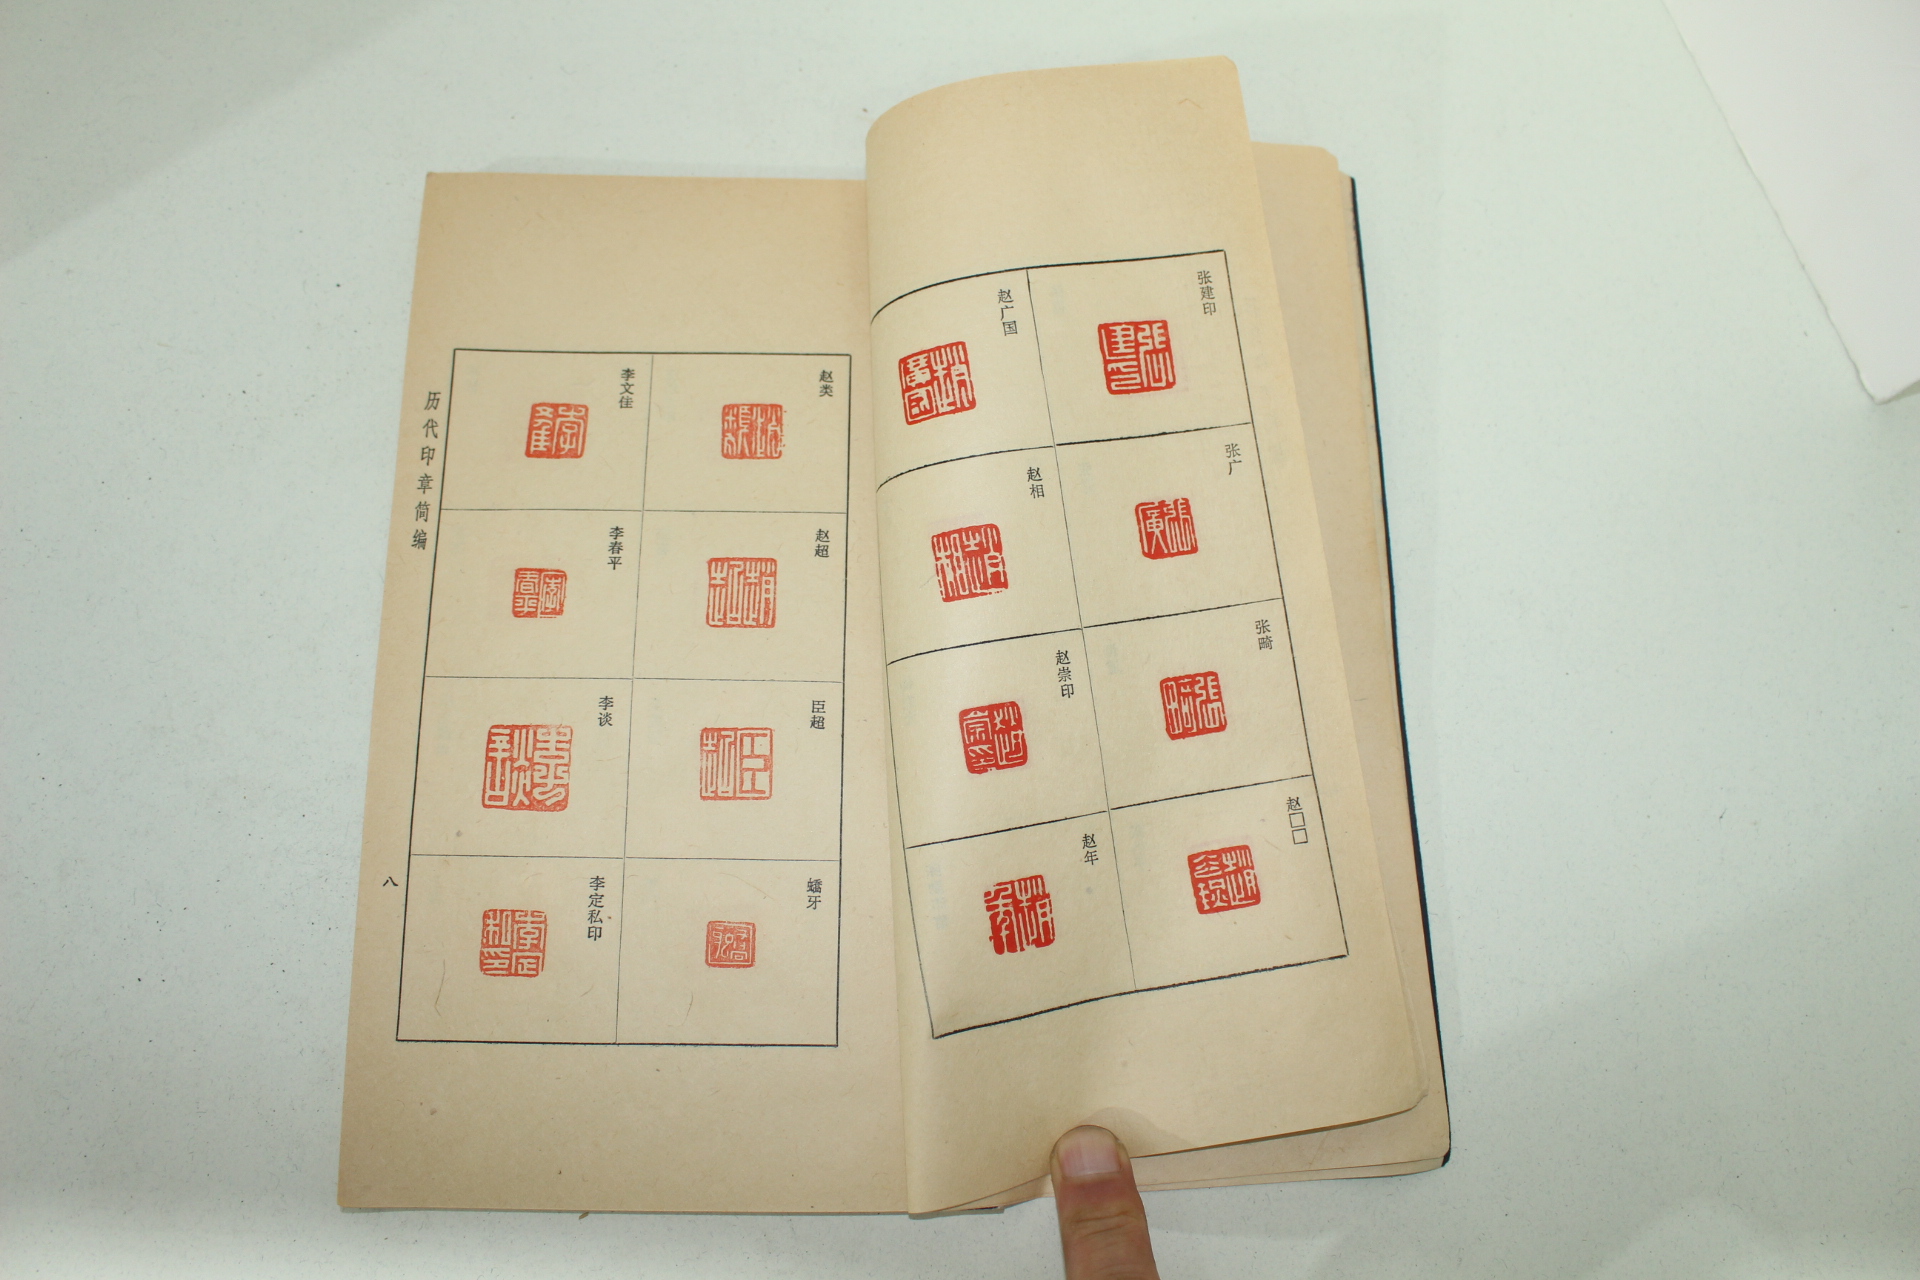 1978년 중국간행 역대인장간편(歷代印章簡編) 1책